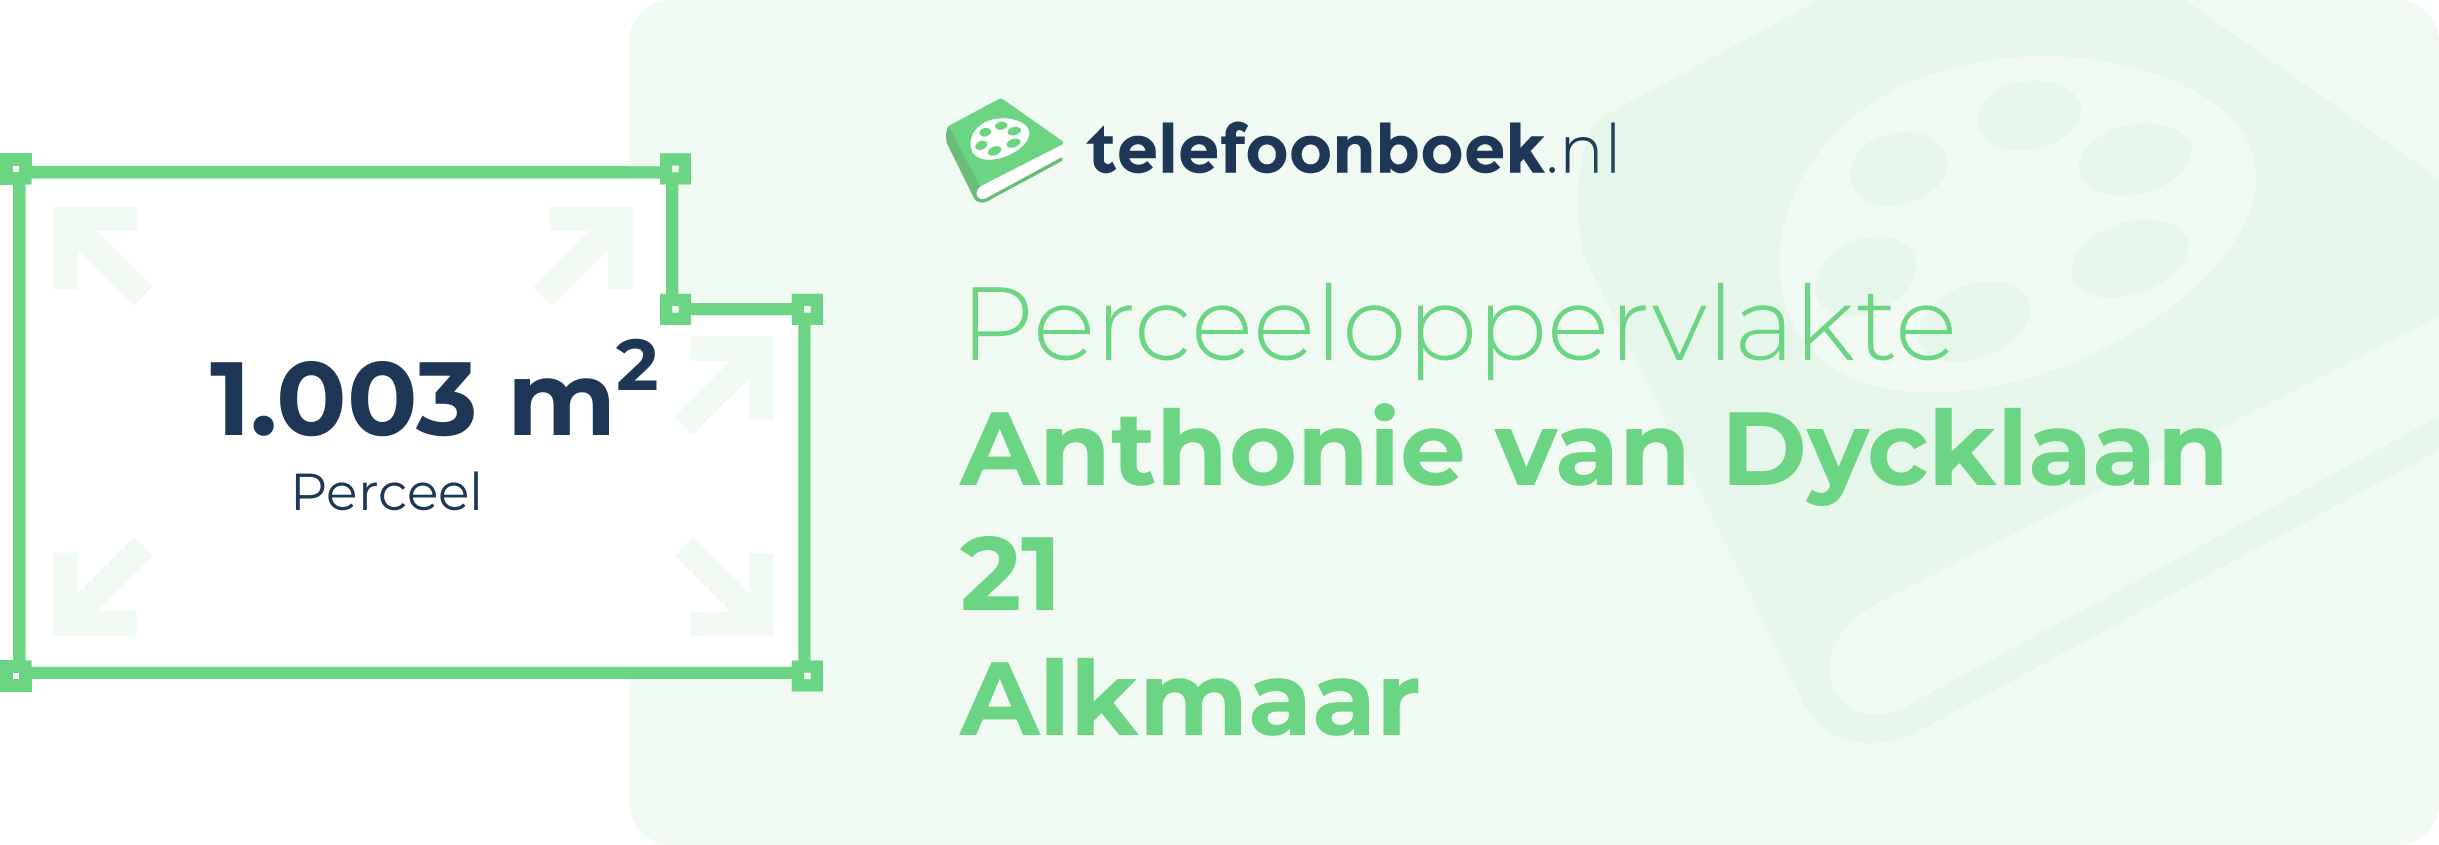 Perceeloppervlakte Anthonie Van Dycklaan 21 Alkmaar